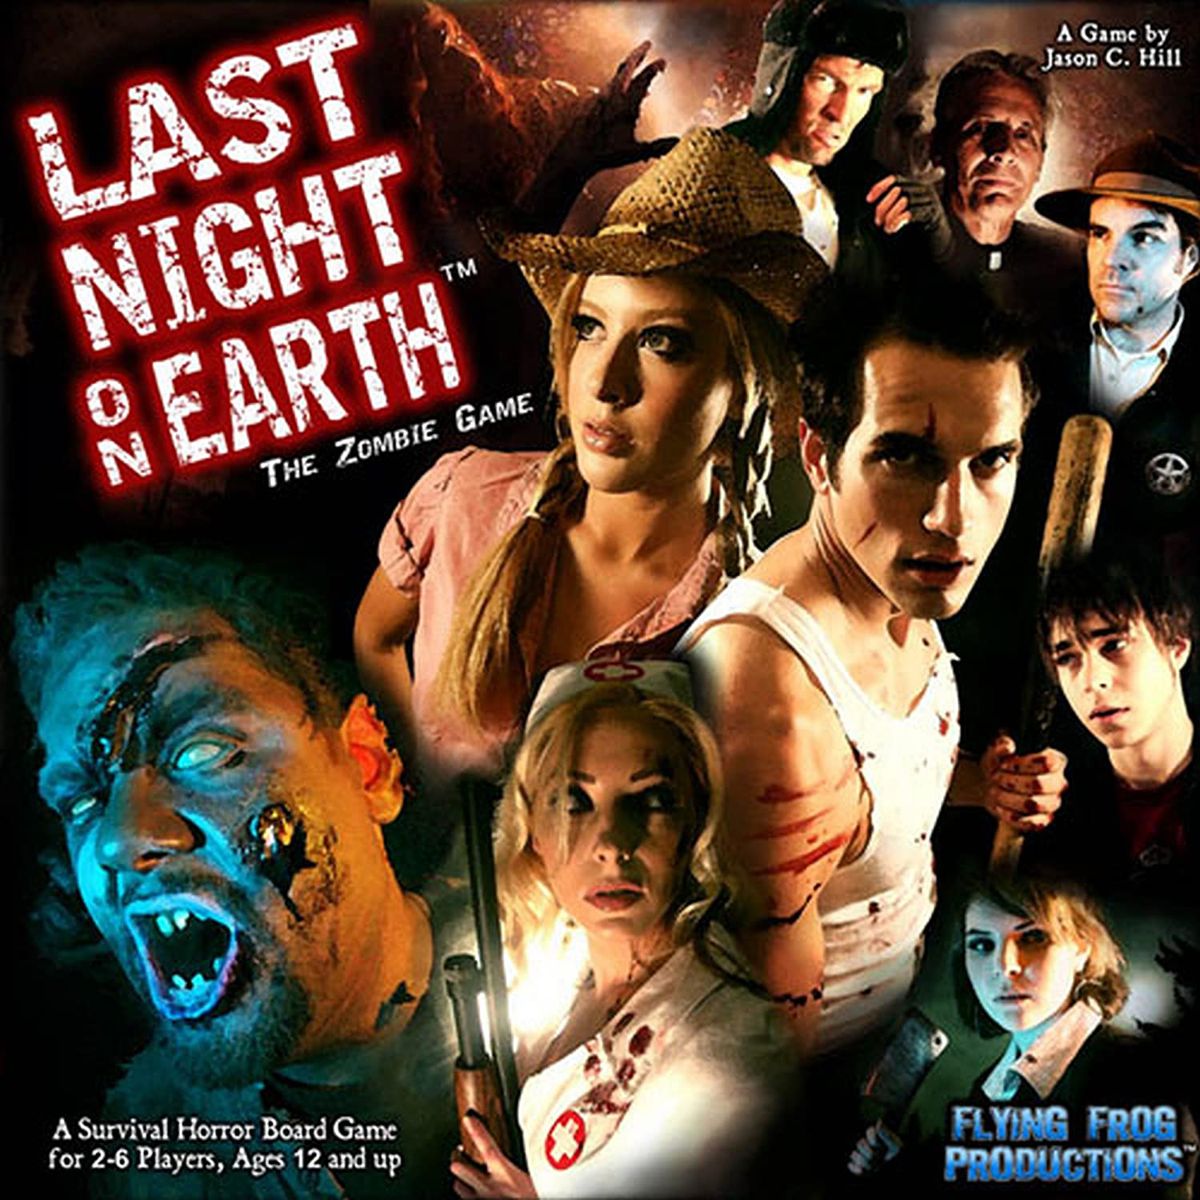 En filmaffisch visar mänskliga skådespelare som karaktärer från Last Night on Earth.